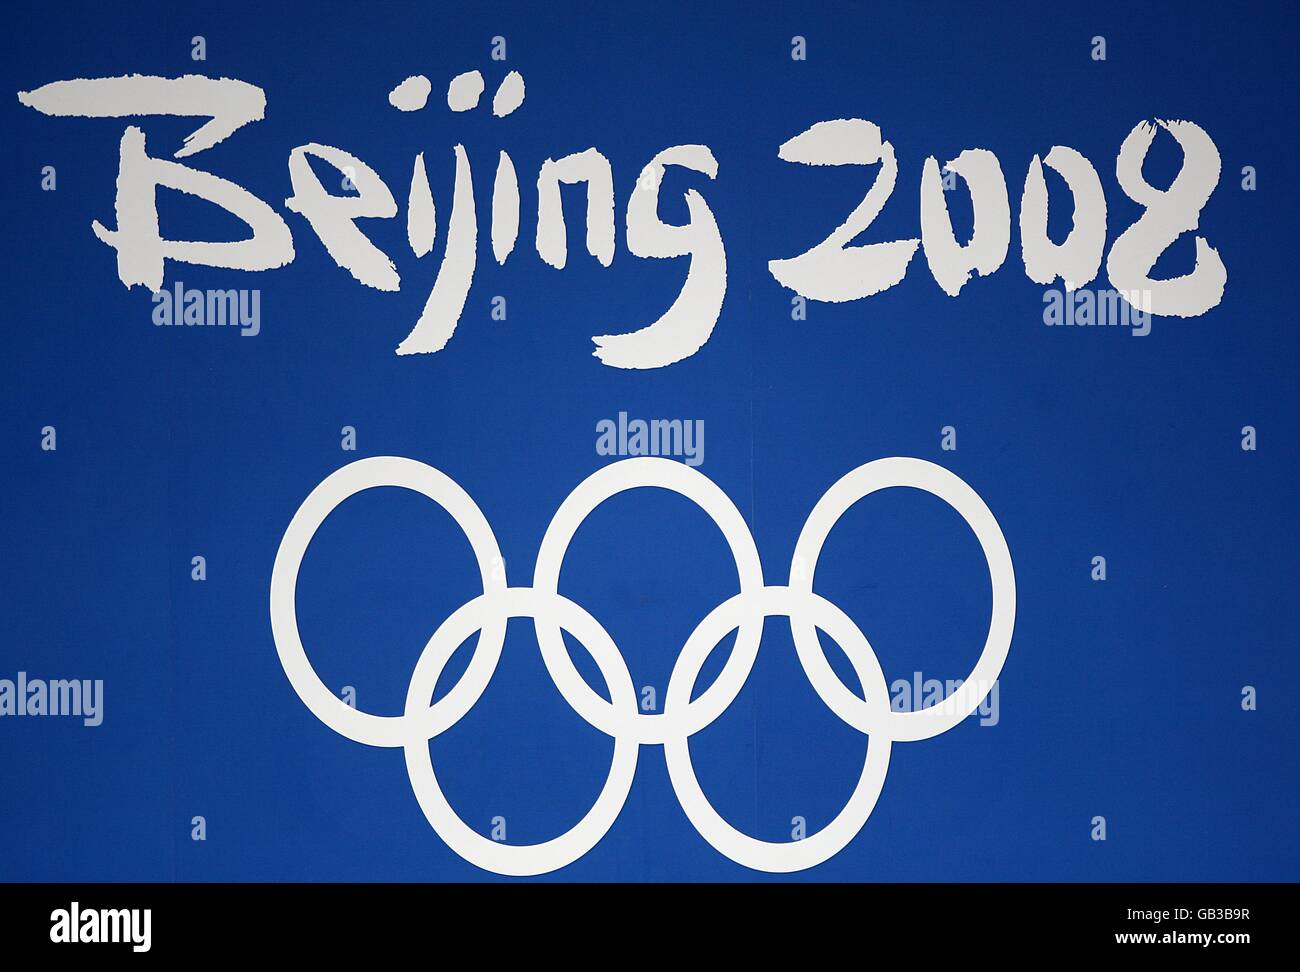 Gesamtansicht von Peking 2008 Singage bei den Olympischen Spielen 2008 National Aquatics Center in Peking, China. Stockfoto